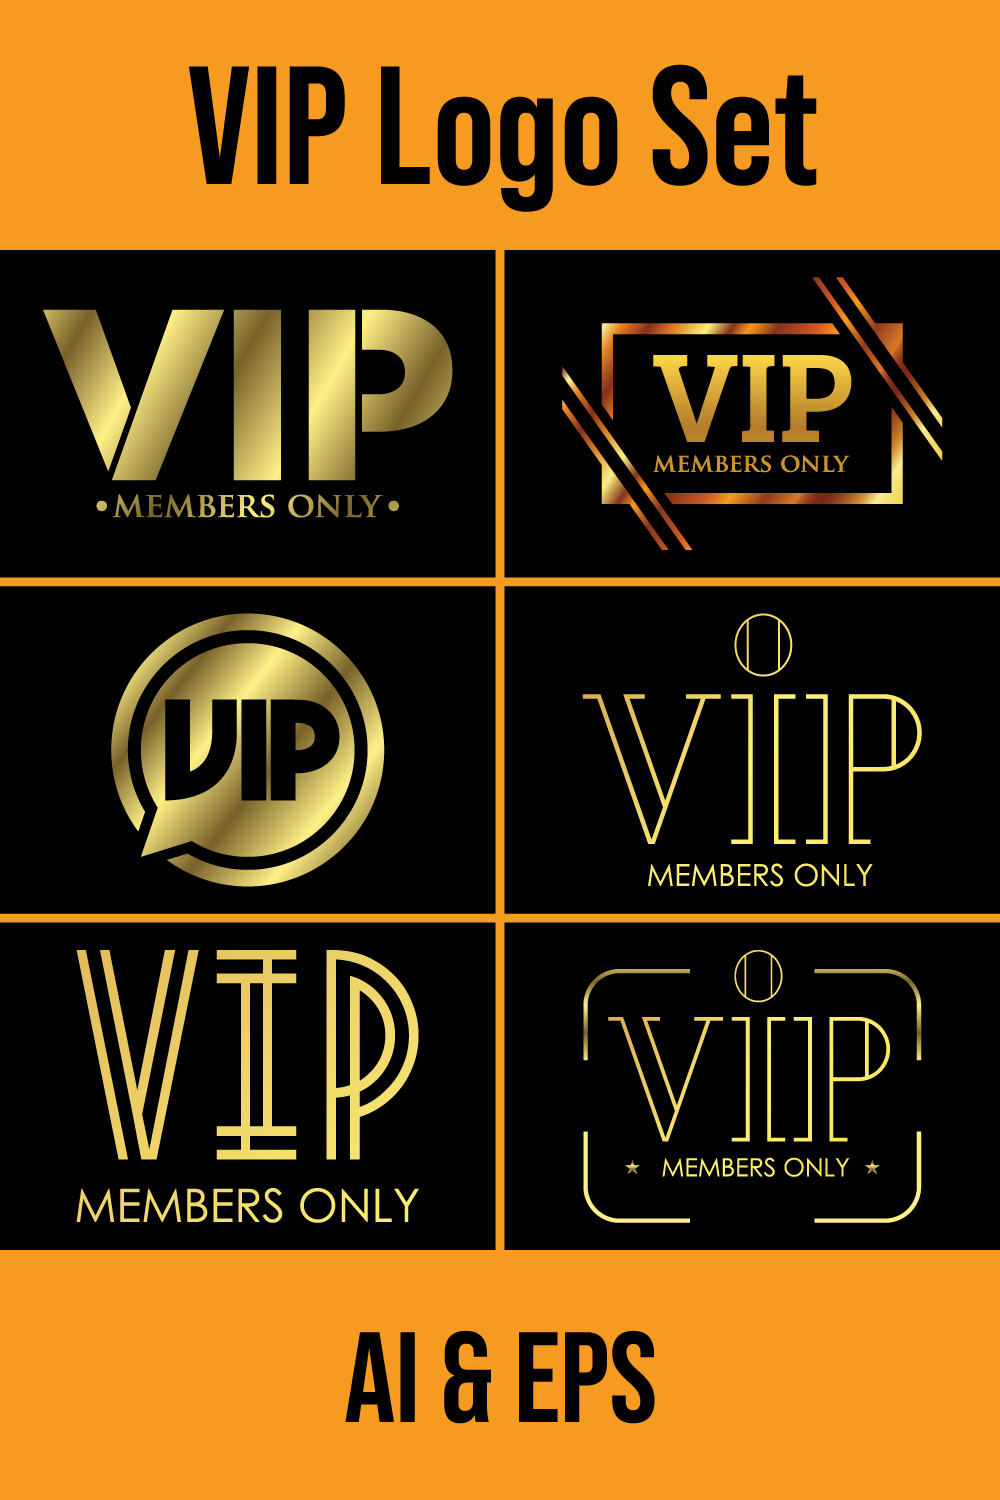 VIP members-only elegant emblem design template Golden vector illustration on black background pinterest preview image.